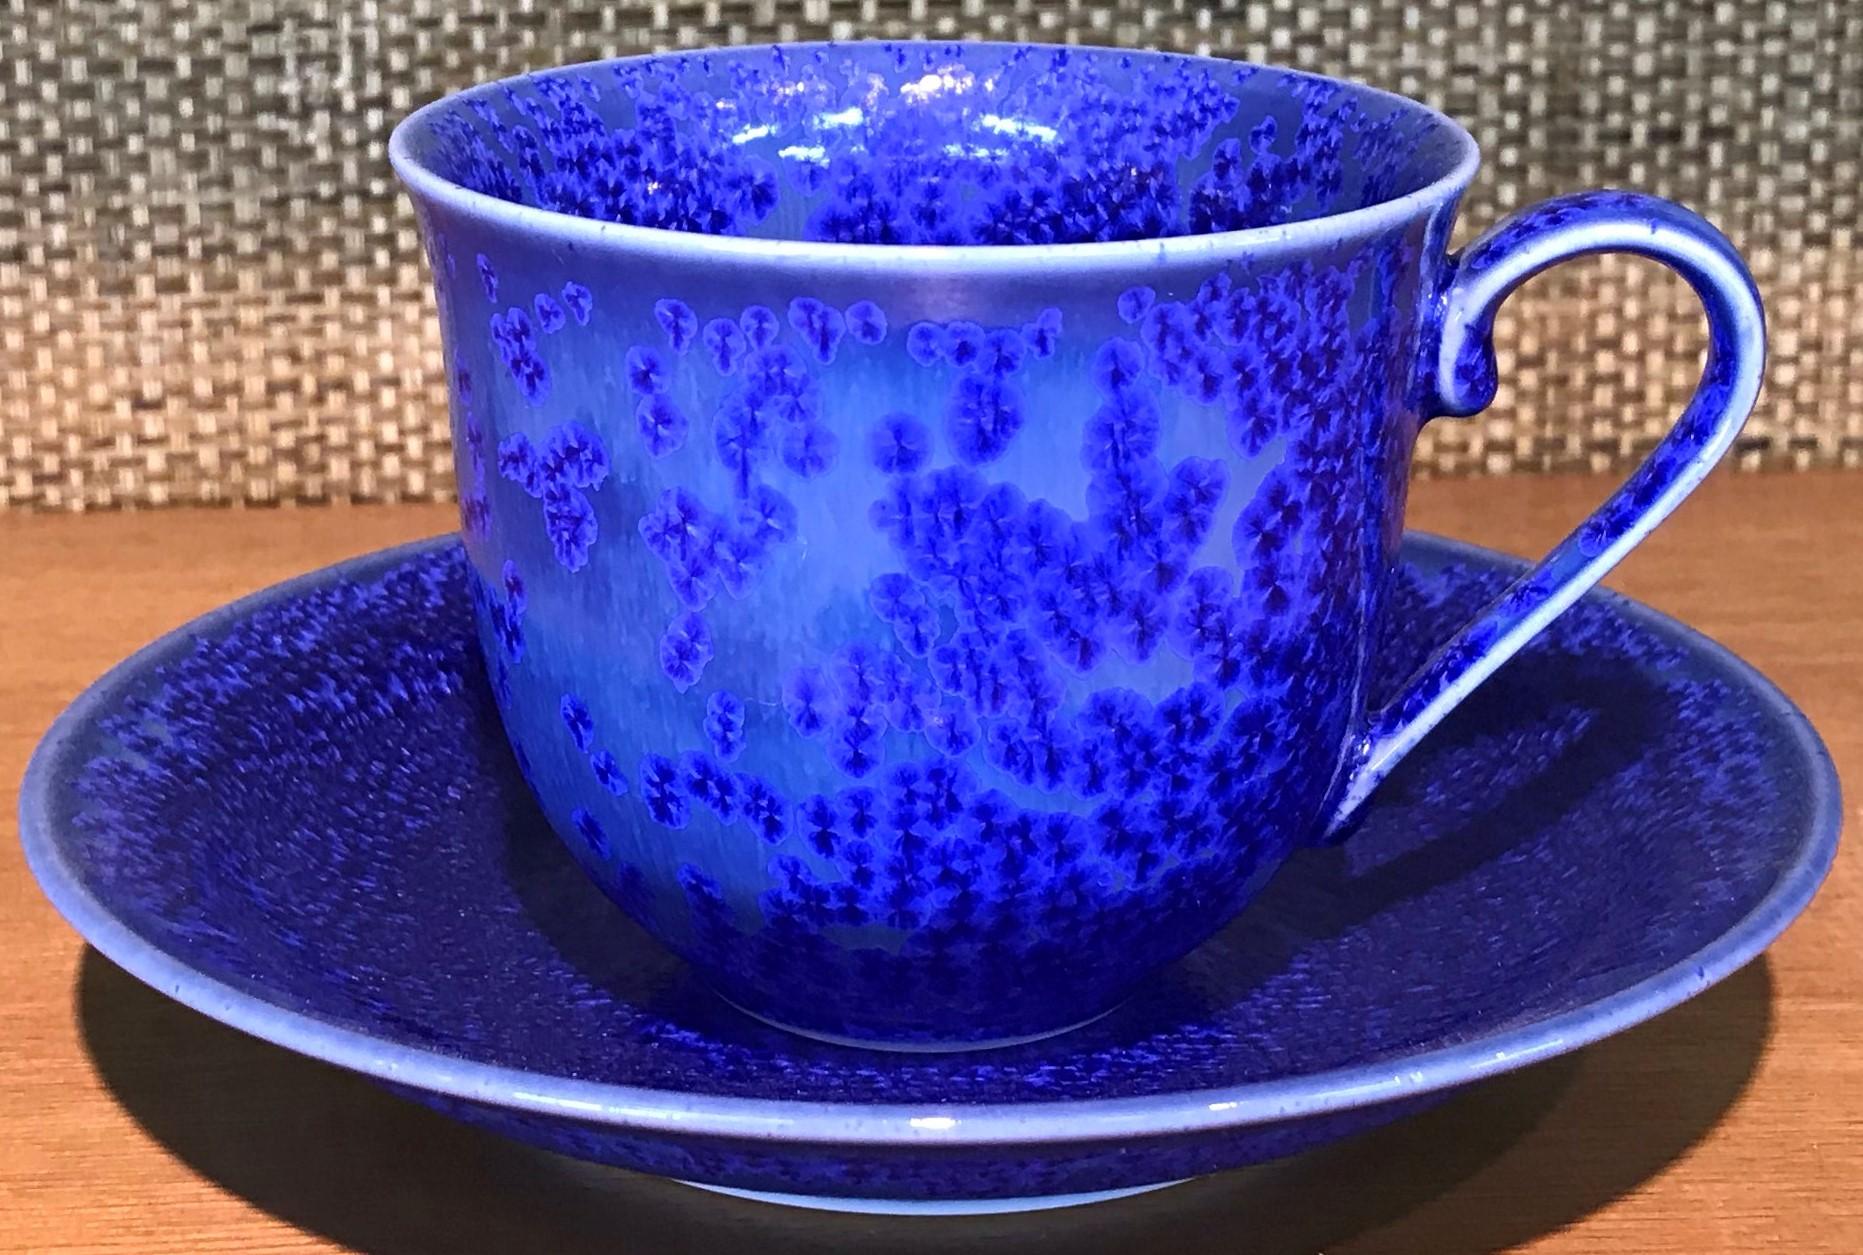 Japanese Black Blue Hand-Glazed Porcelain Cup and Saucer, Master Artist 2018 3